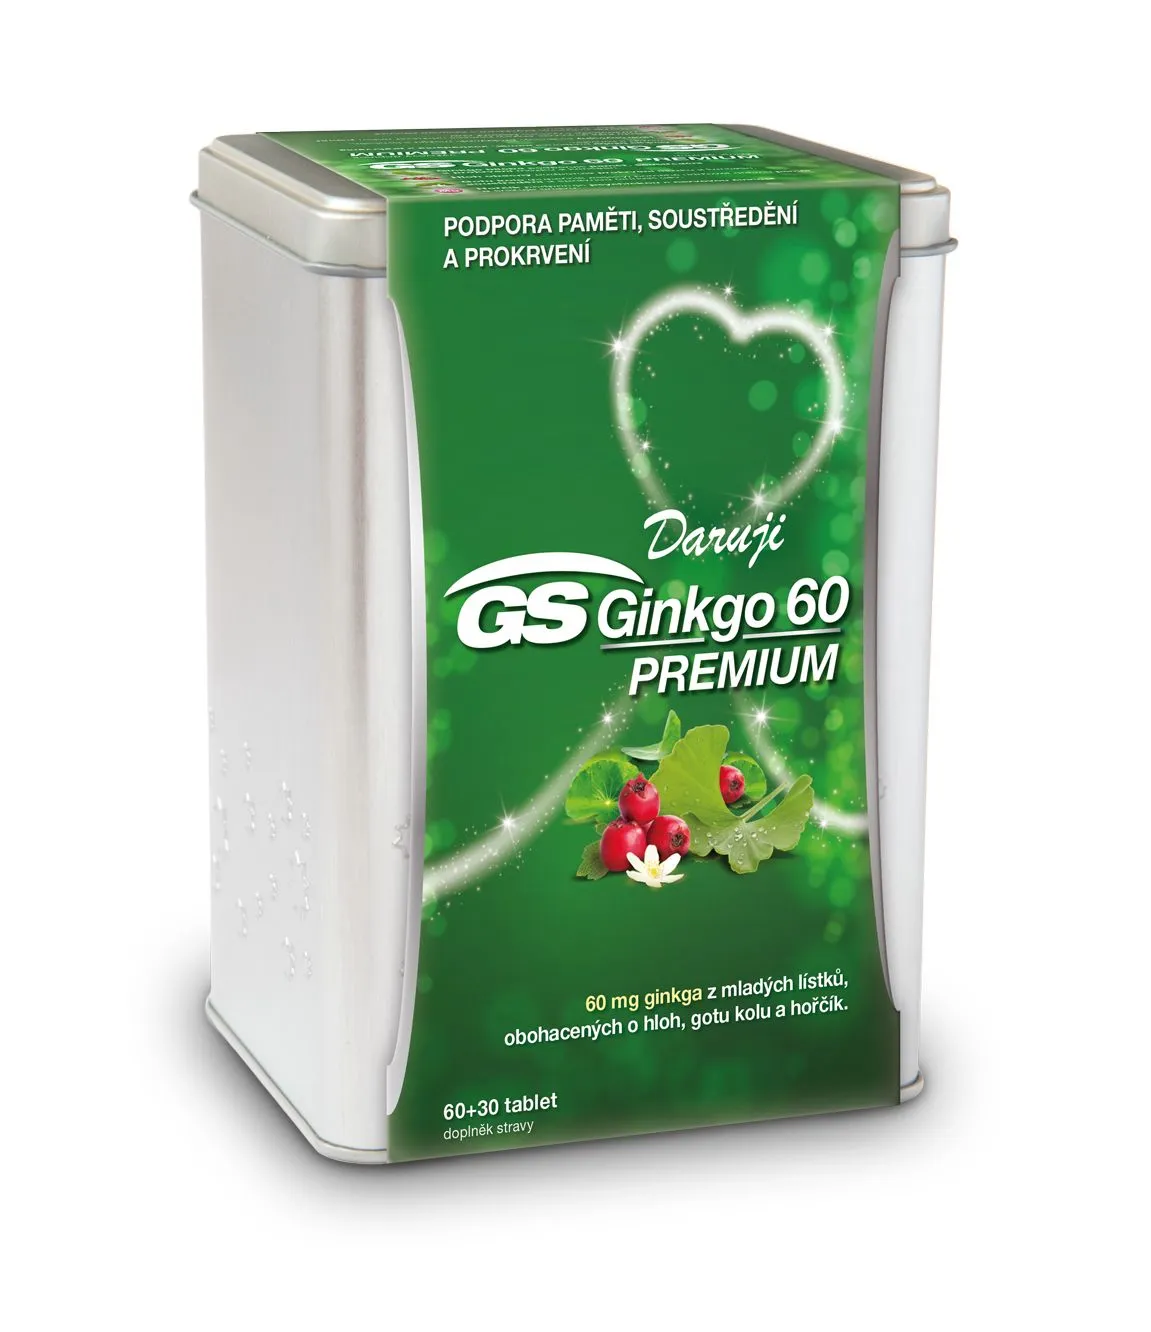 GS Ginkgo 60 Premium dárkové balení 60+30 tablet